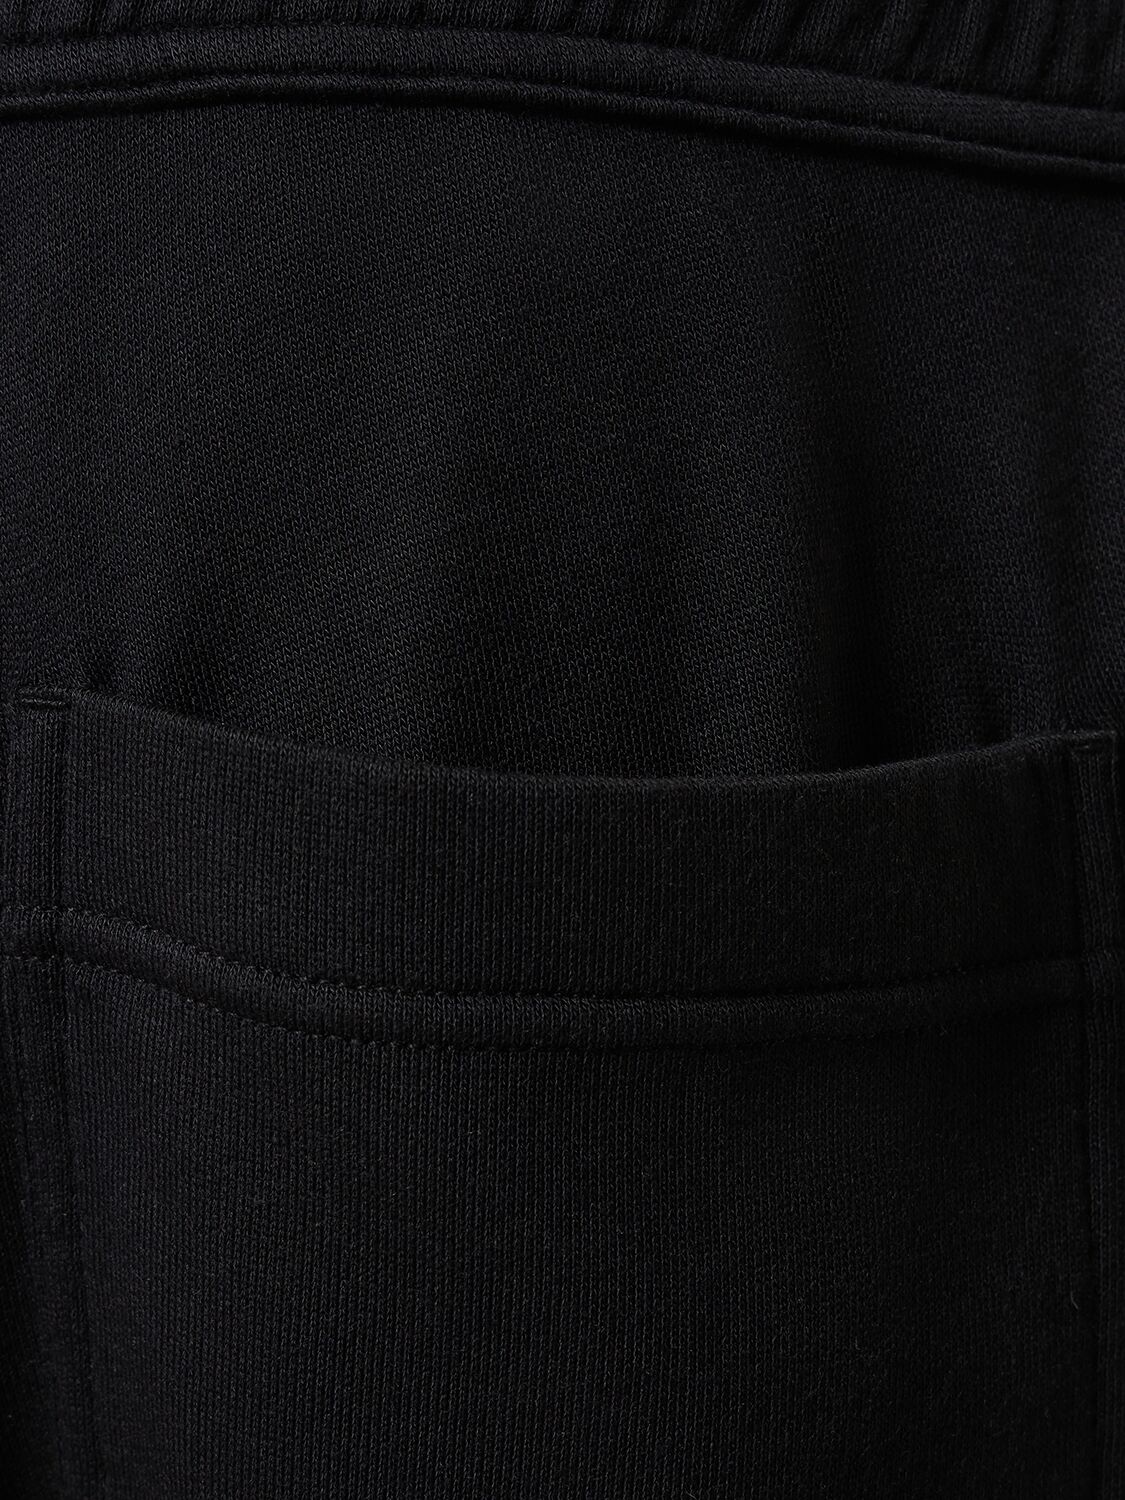 Shop Tom Ford Lounge Viscose Blend Sweatpants In Black